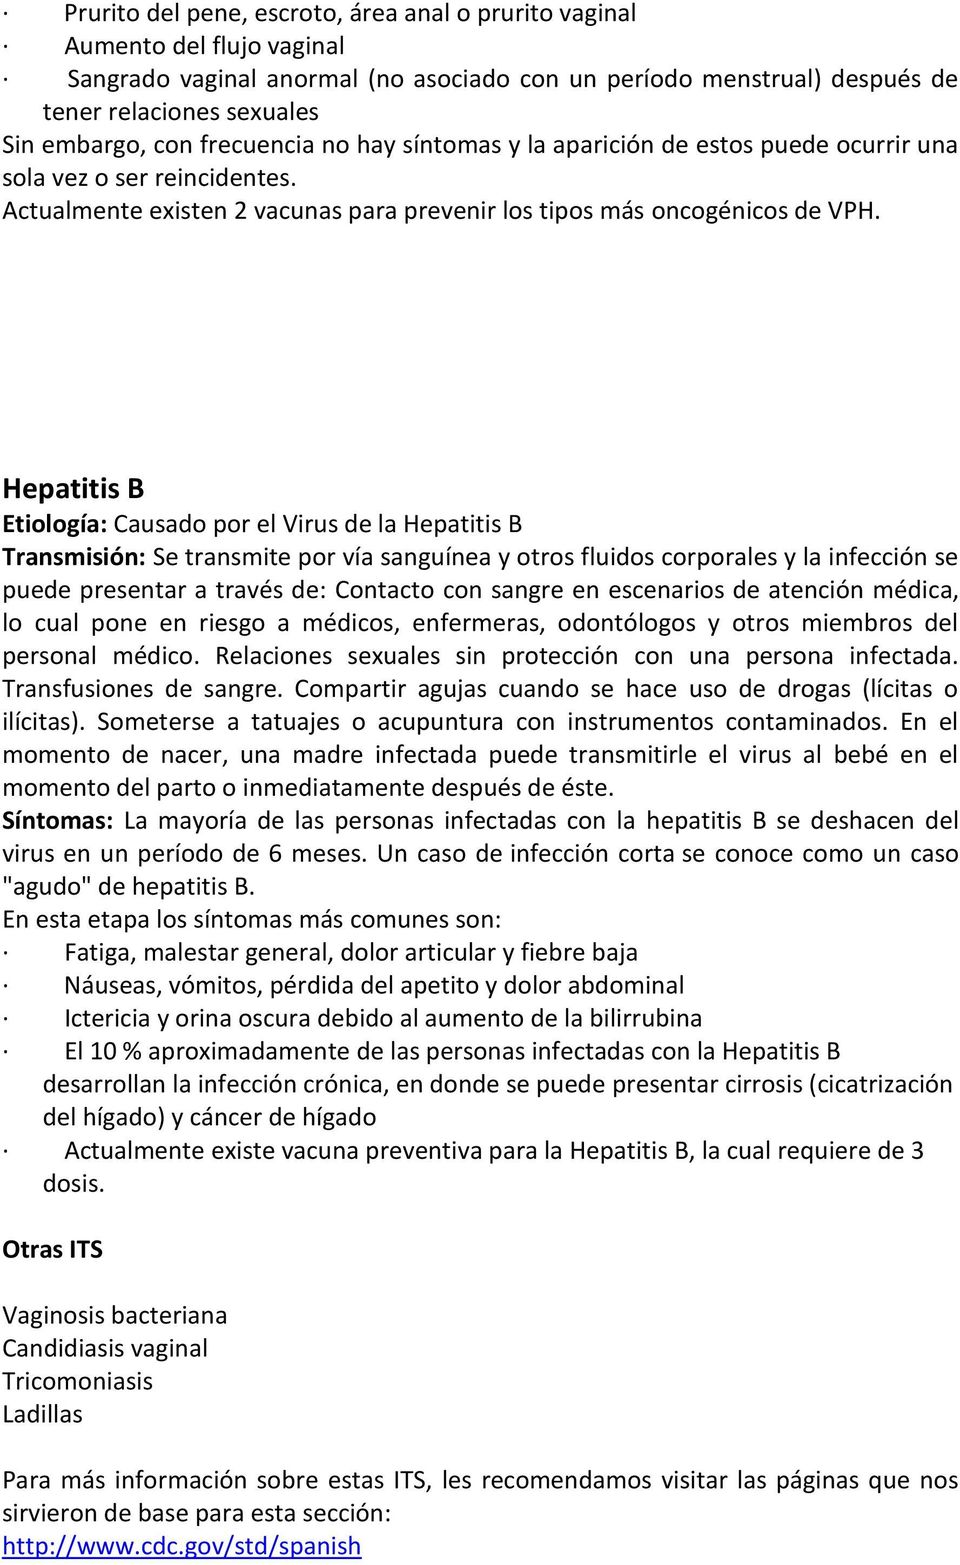 Hepatitis B Etiología: Causado por el Virus de la Hepatitis B Transmisión: Se transmite por vía sanguínea y otros fluidos corporales y la infección se puede presentar a través de: Contacto con sangre